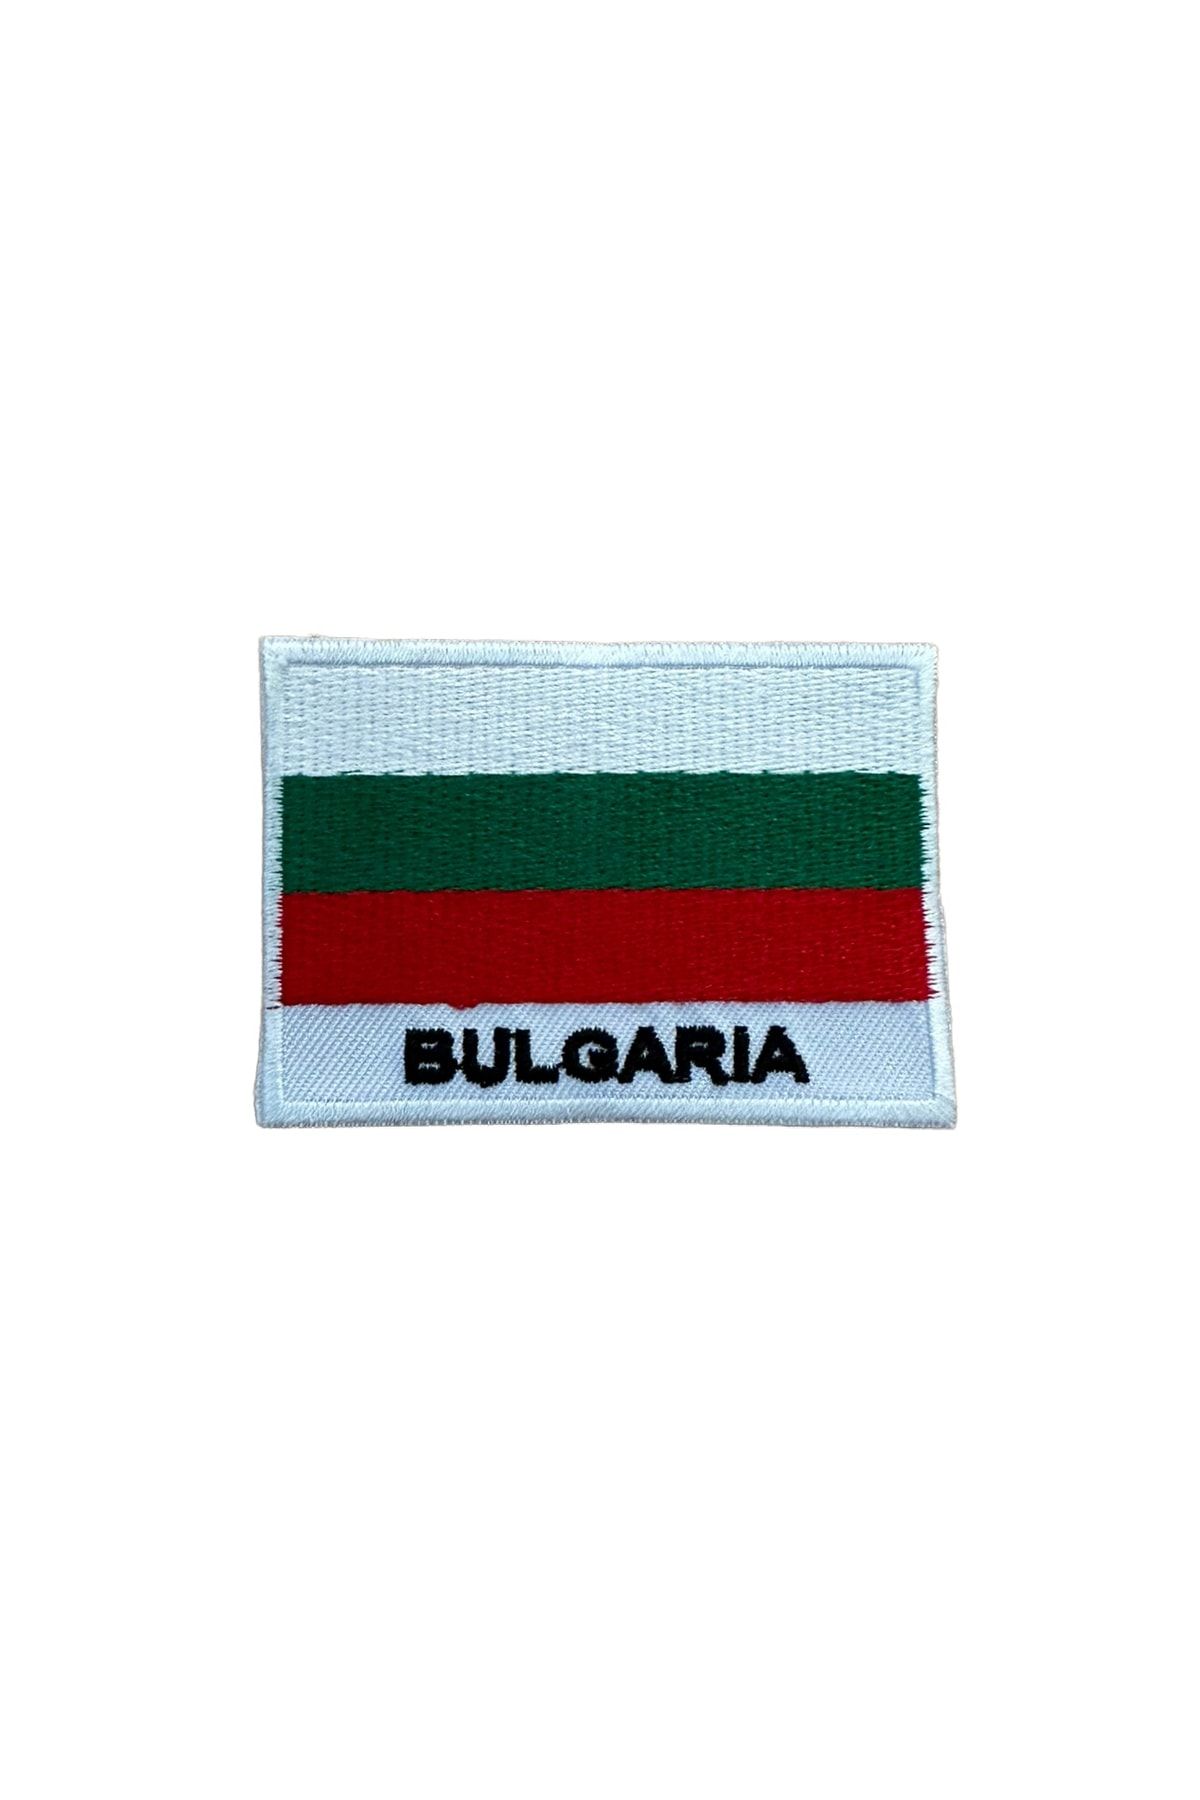 Mustang Bulgaristan Bayraklı Bulgaria Patches Arma Peç Kot Yaması 1